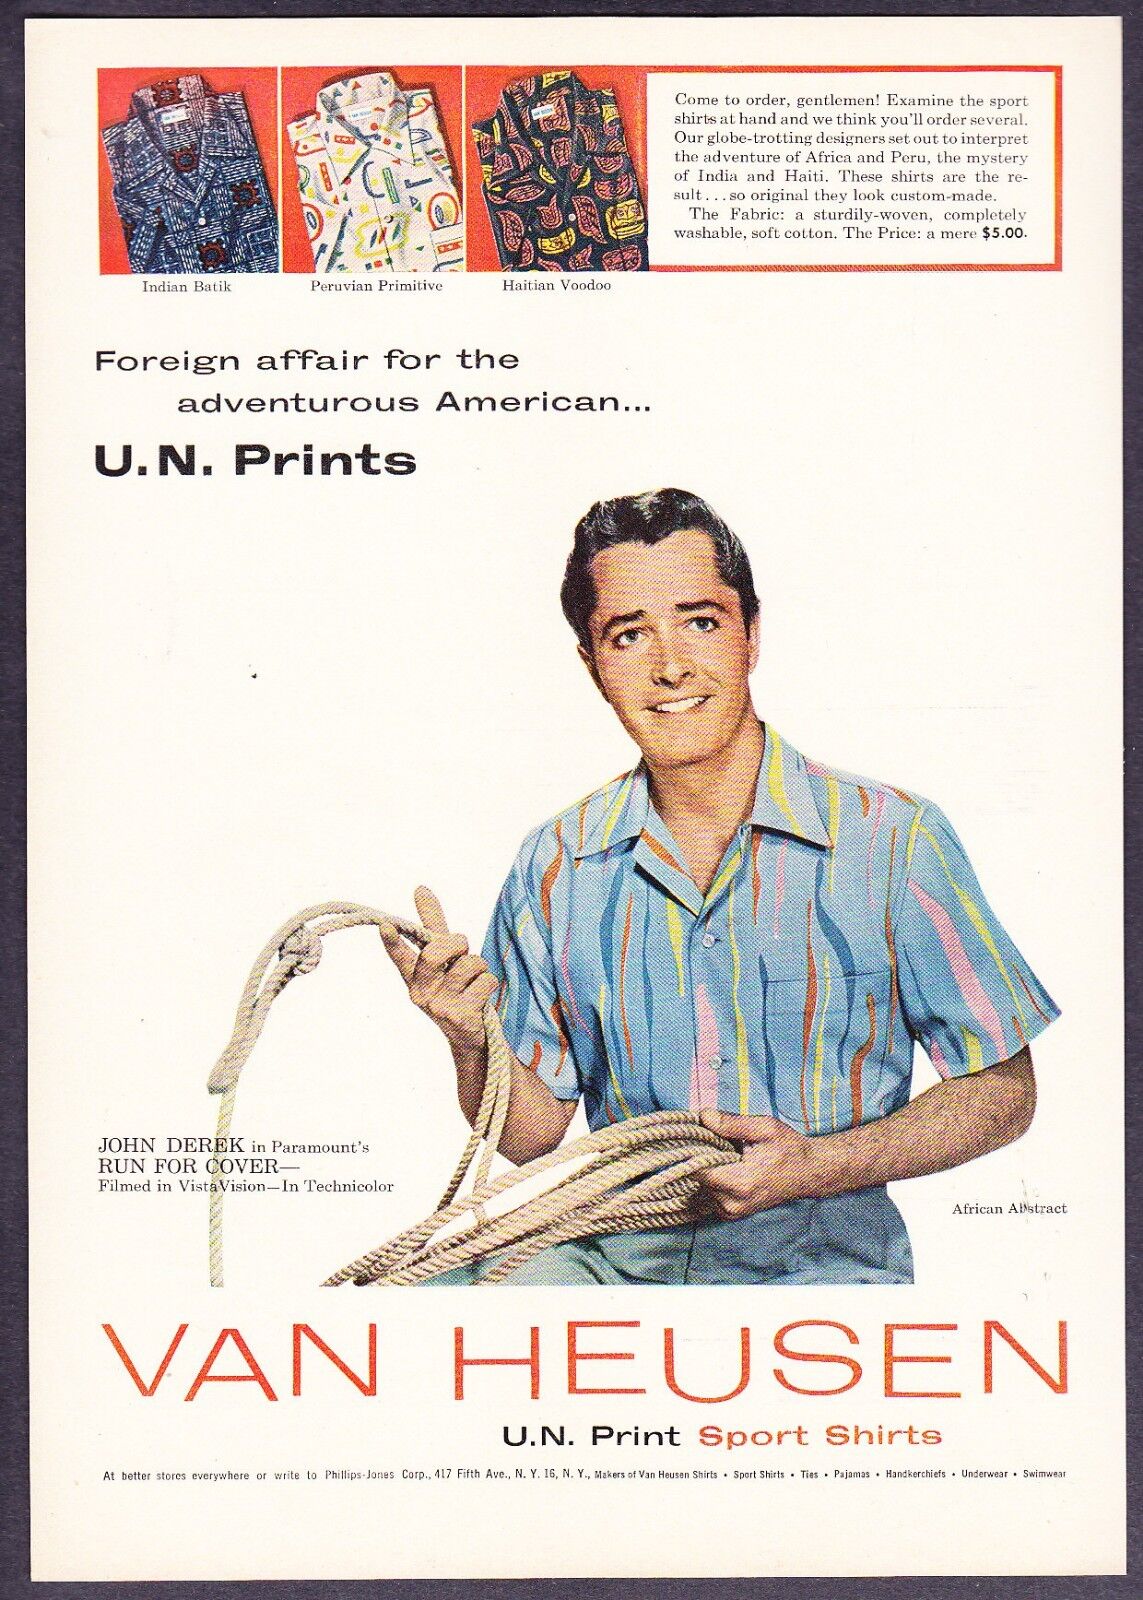 1955 Actor John Derek photo Van Heusen Shirts U.N. African Print vintage ad